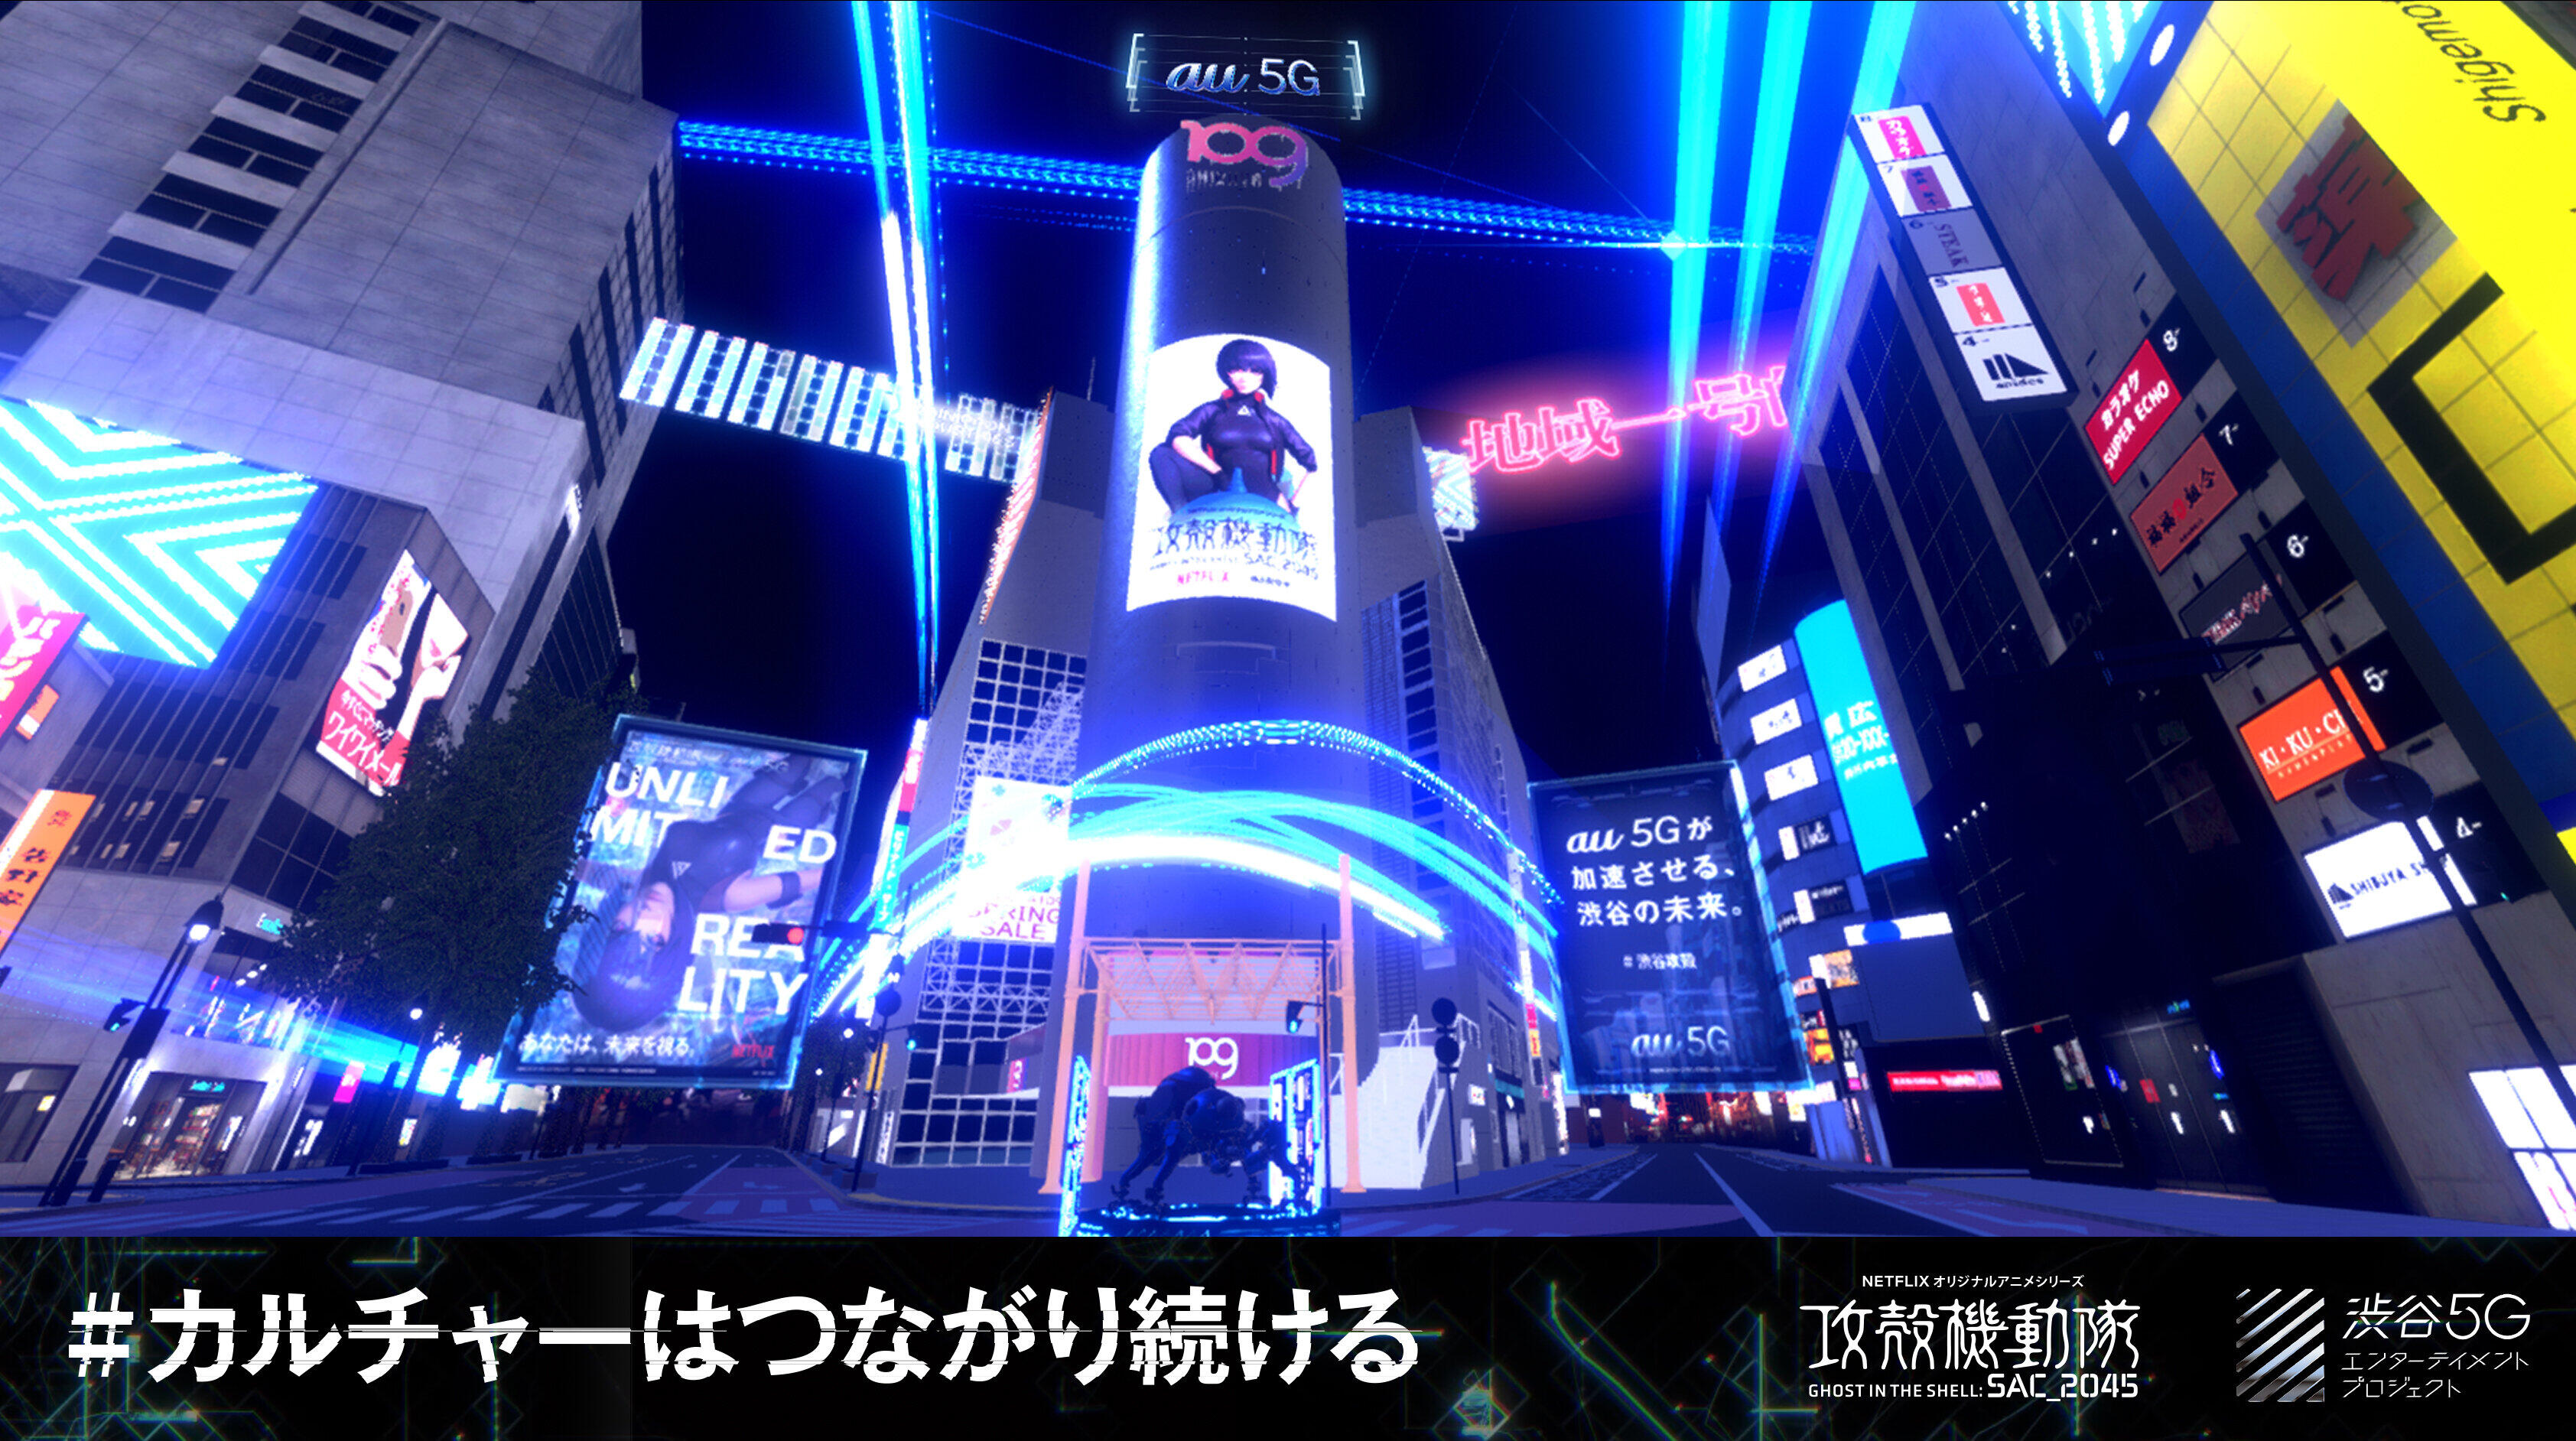 デジタル空間上に、渋谷の街「バーチャル渋谷」が誕生